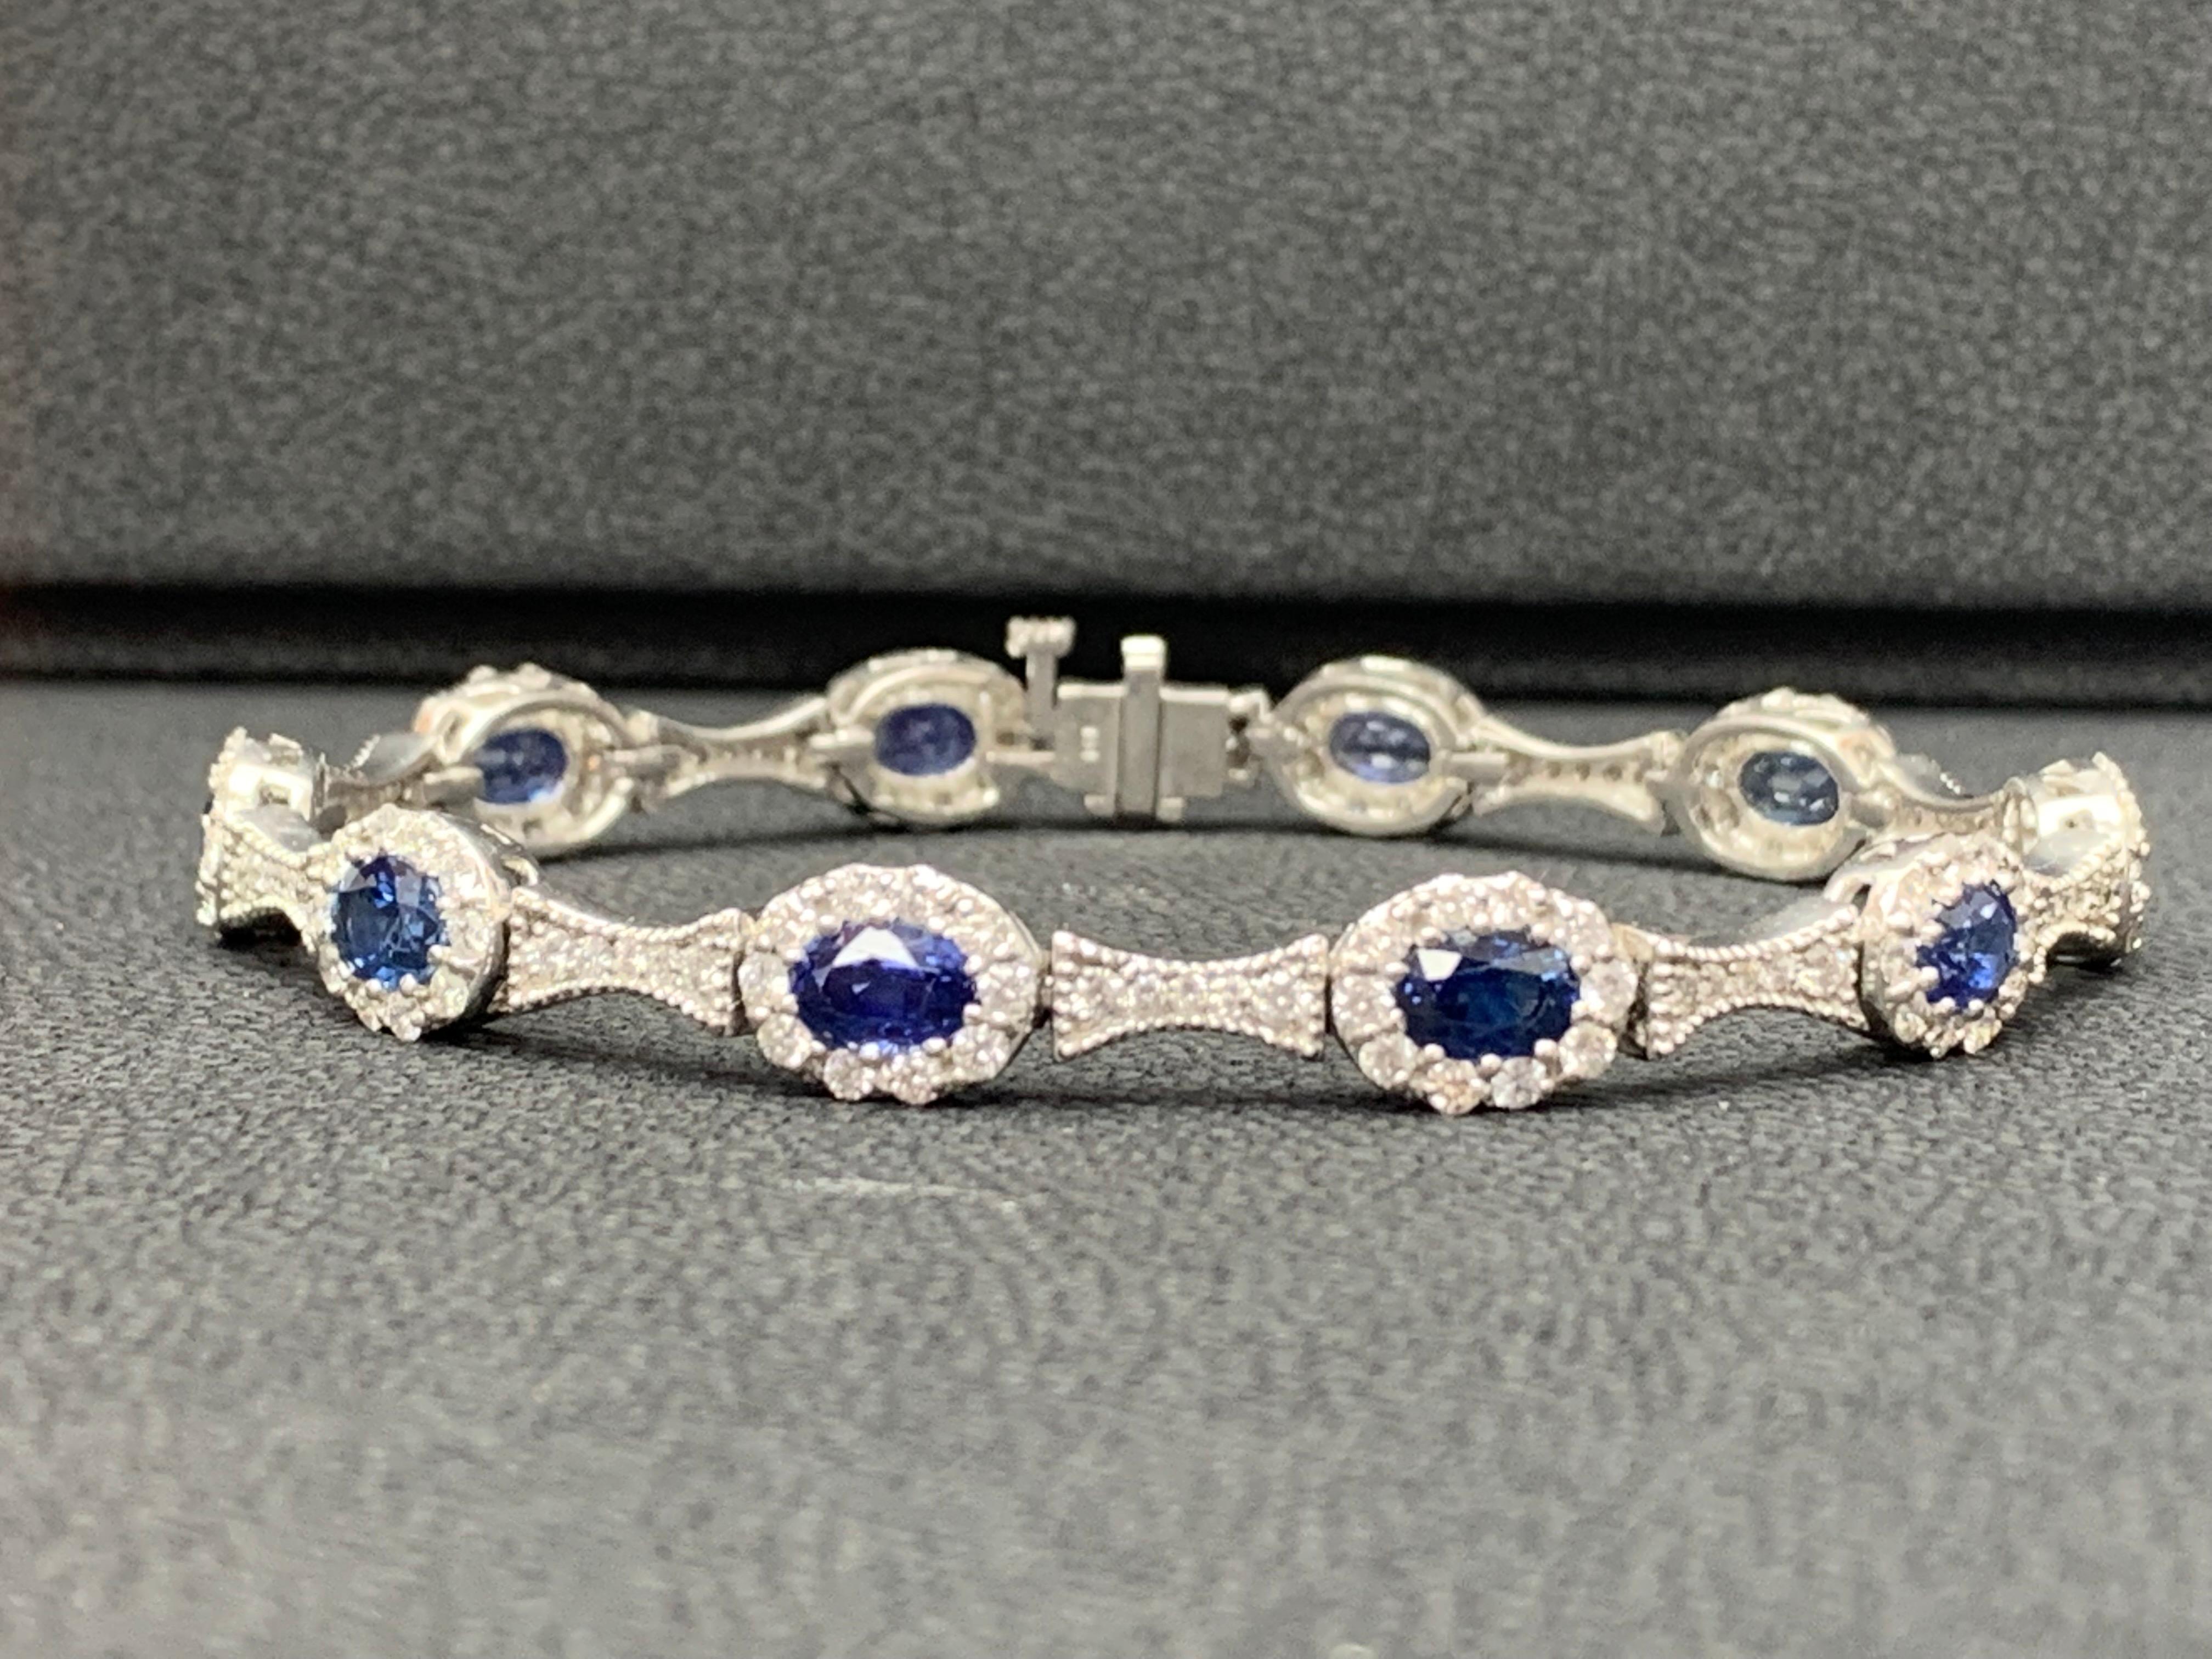 Ein exquisites und luxuriöses Armband mit 6,19 Karat blauen Saphiren im Ovalschliff, umgeben von runden Brillanten von insgesamt 2,80 Karat. Eingefasst in eine Fassung aus 14 Karat Weißgold.

Alle Diamanten sind GH Farbe SI1 Klarheit.
Auch in Rubin